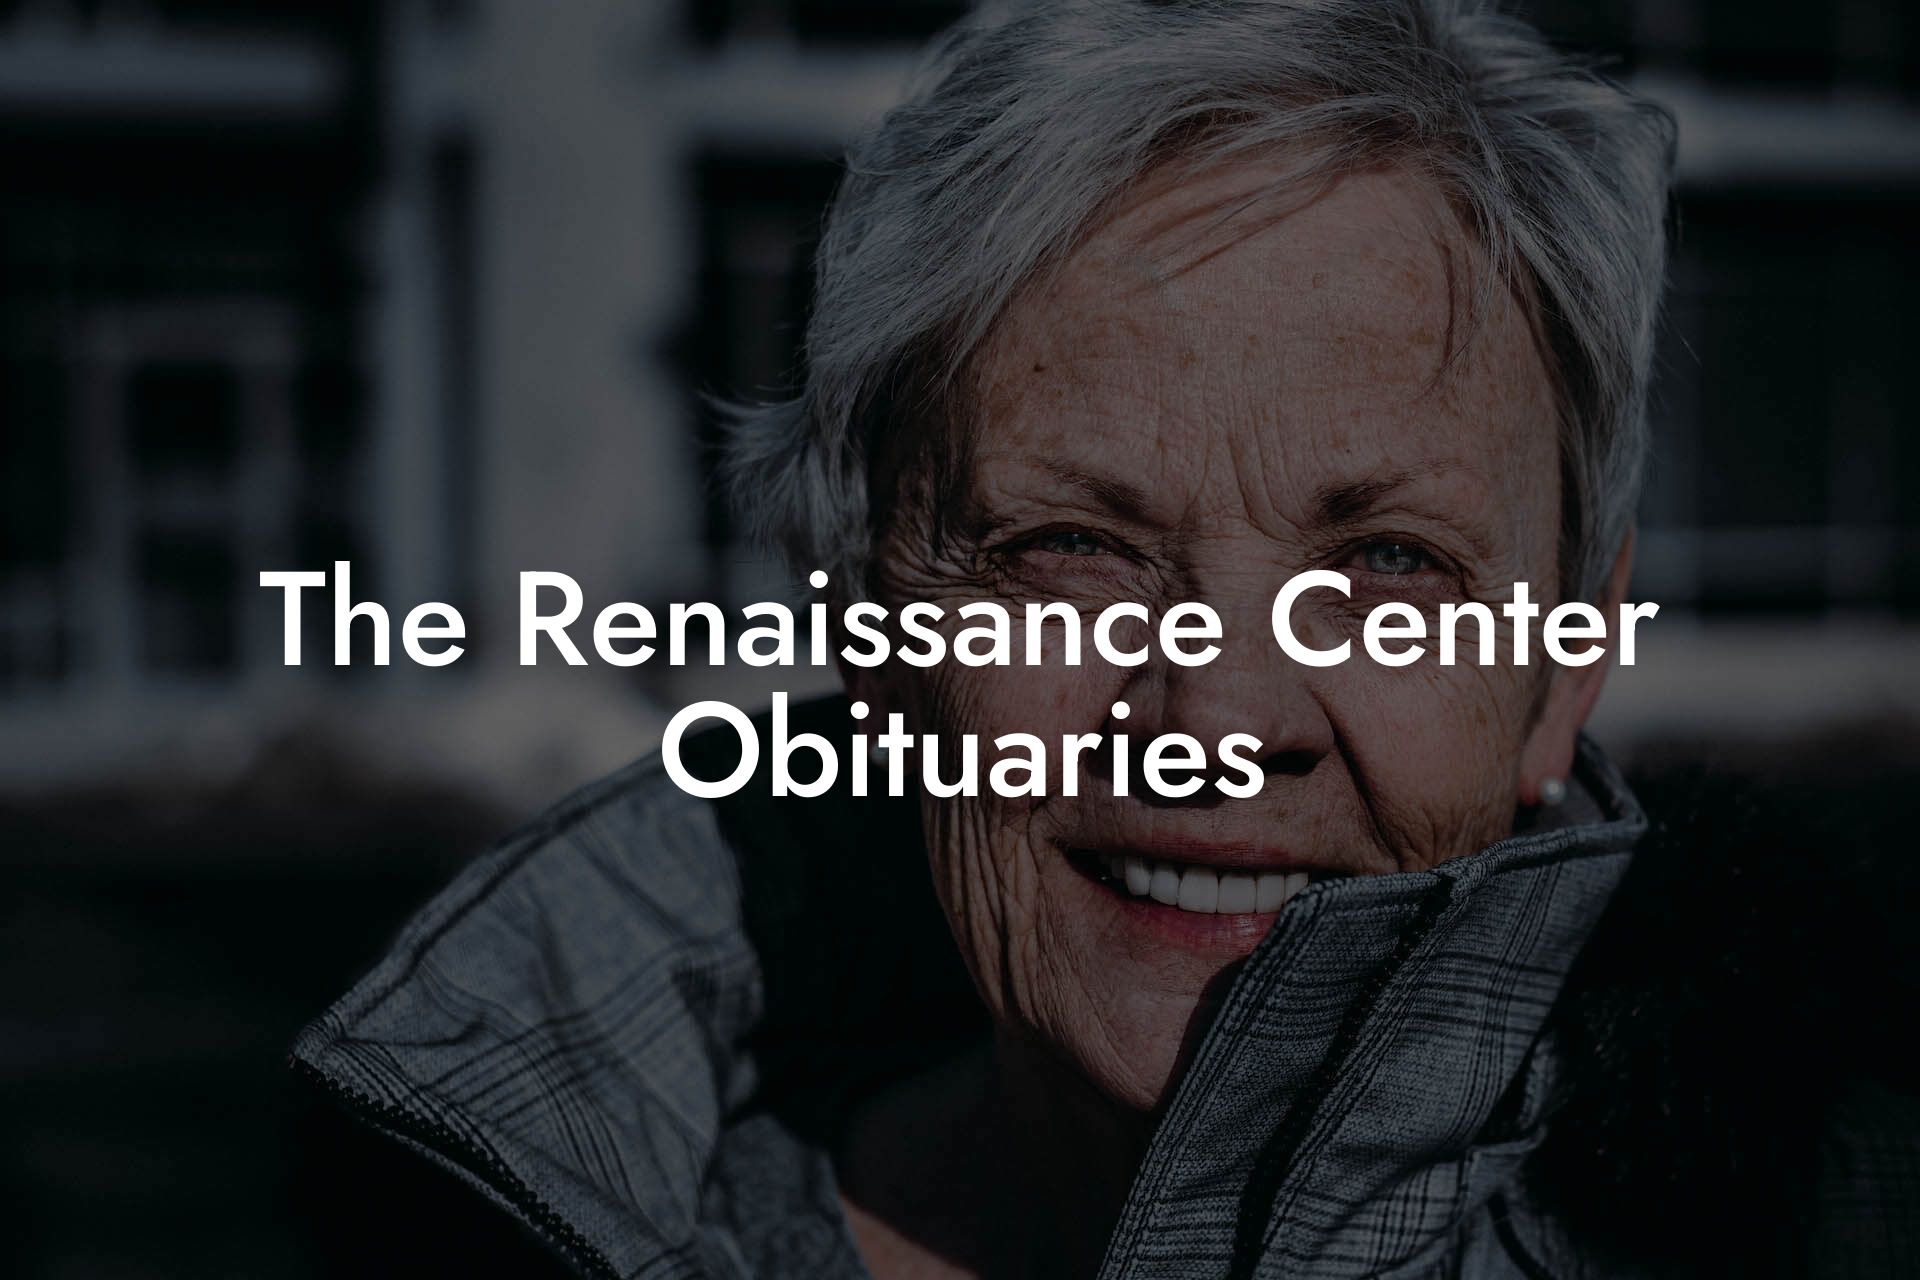 The Renaissance Center Obituaries